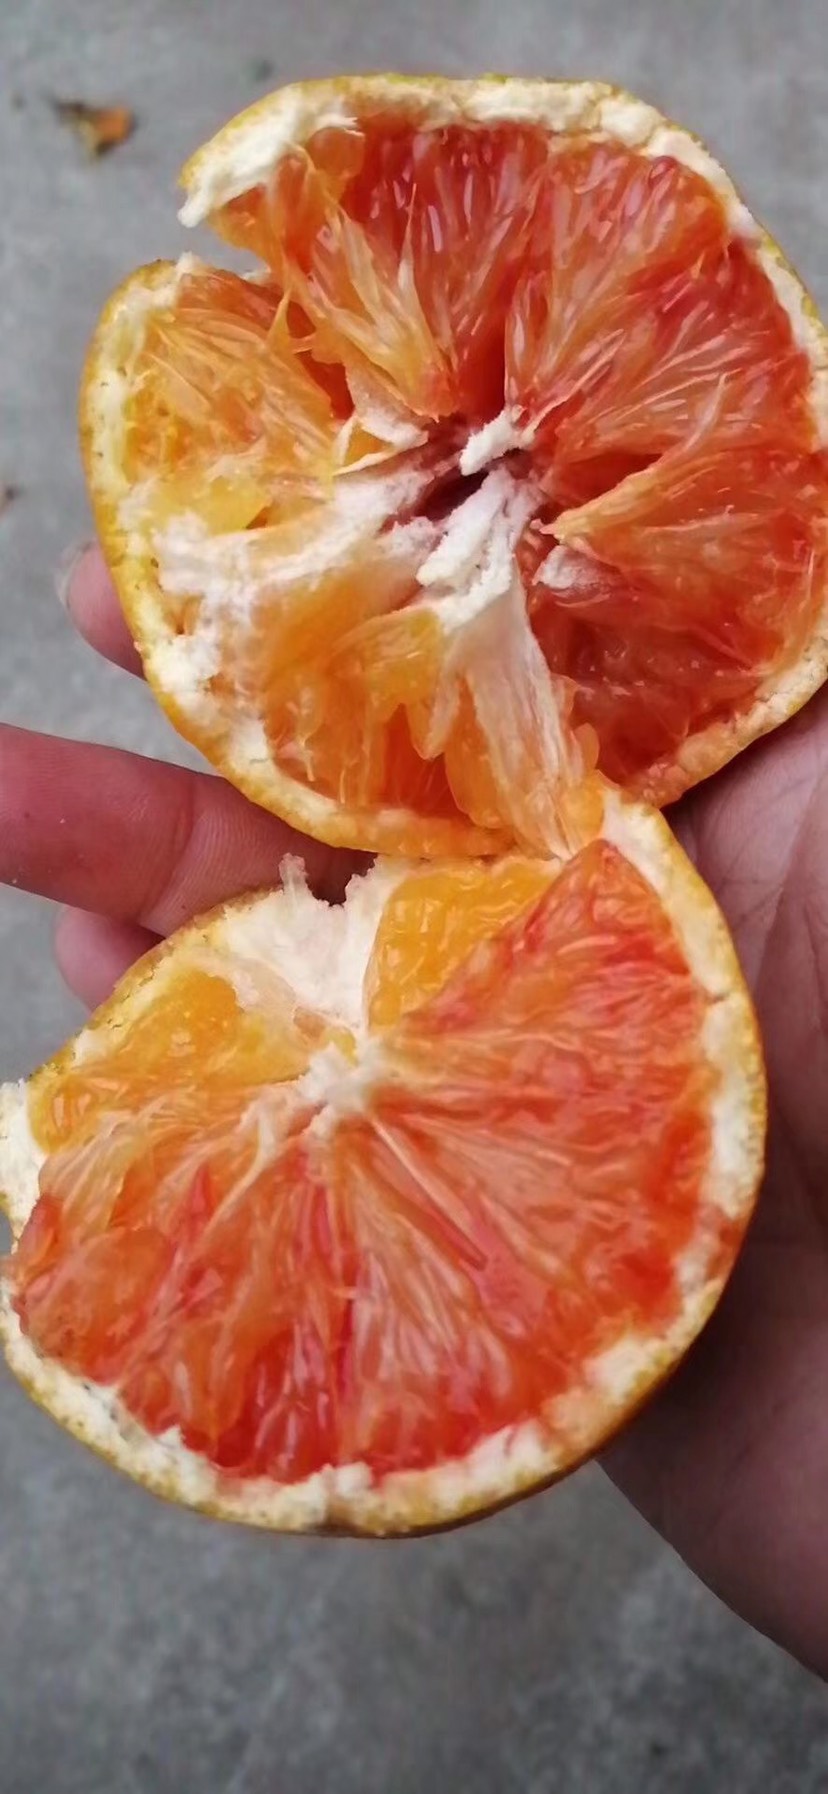 供应大厅  水果 橙子  商品详情 「塔罗科血橙」实拍 甜中带微酸 如